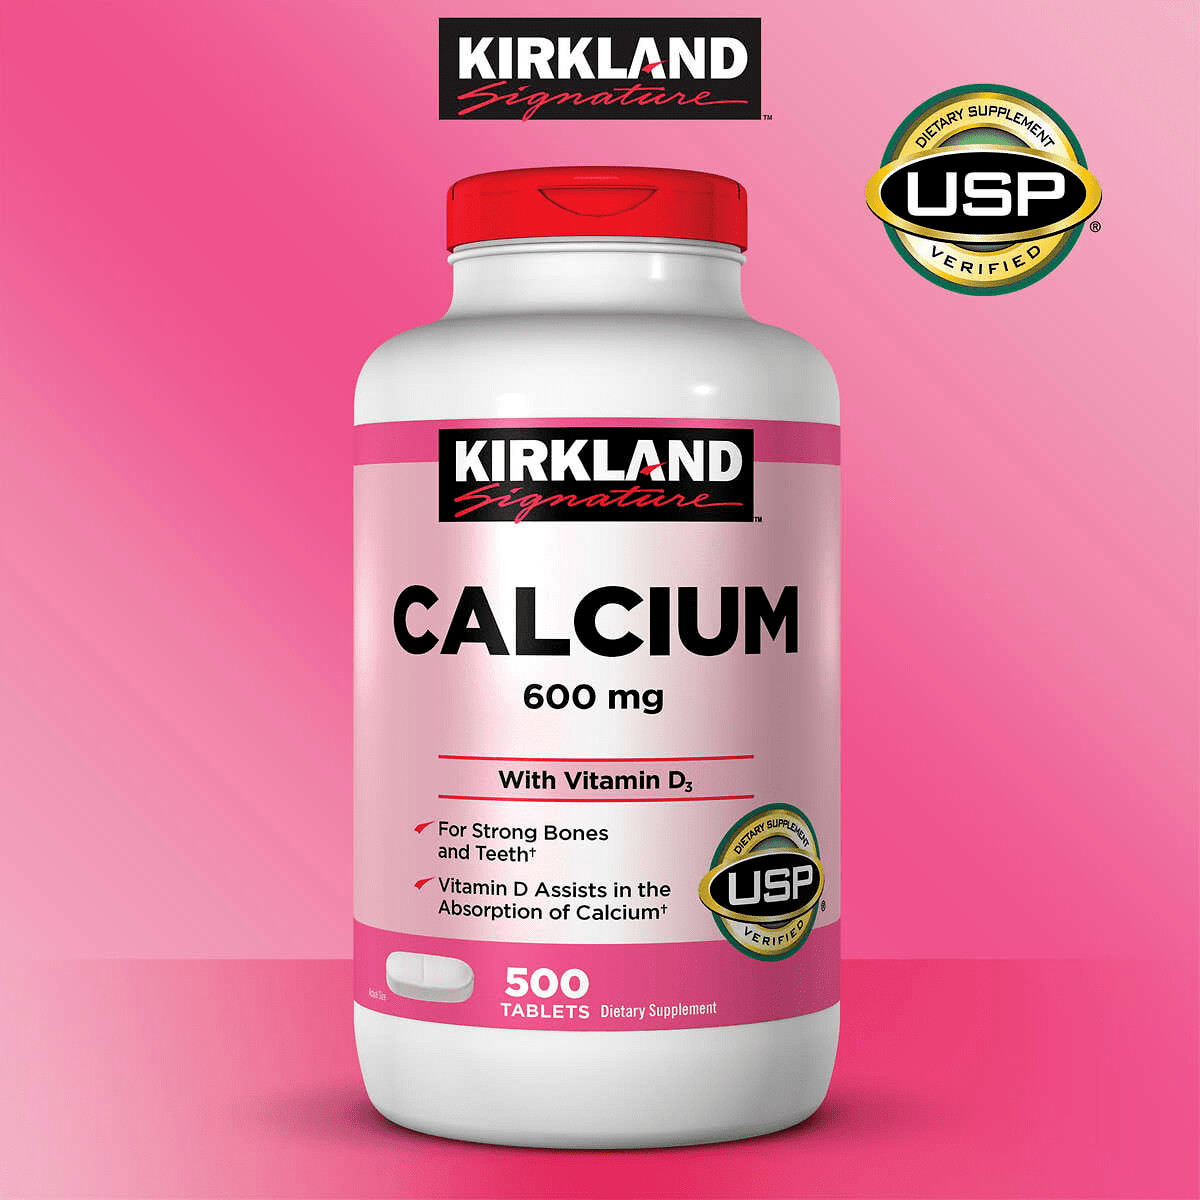 1 Tablet Kirkland Signature Calcium 600mg + Vitamin D3 - SOLD PER PIECE